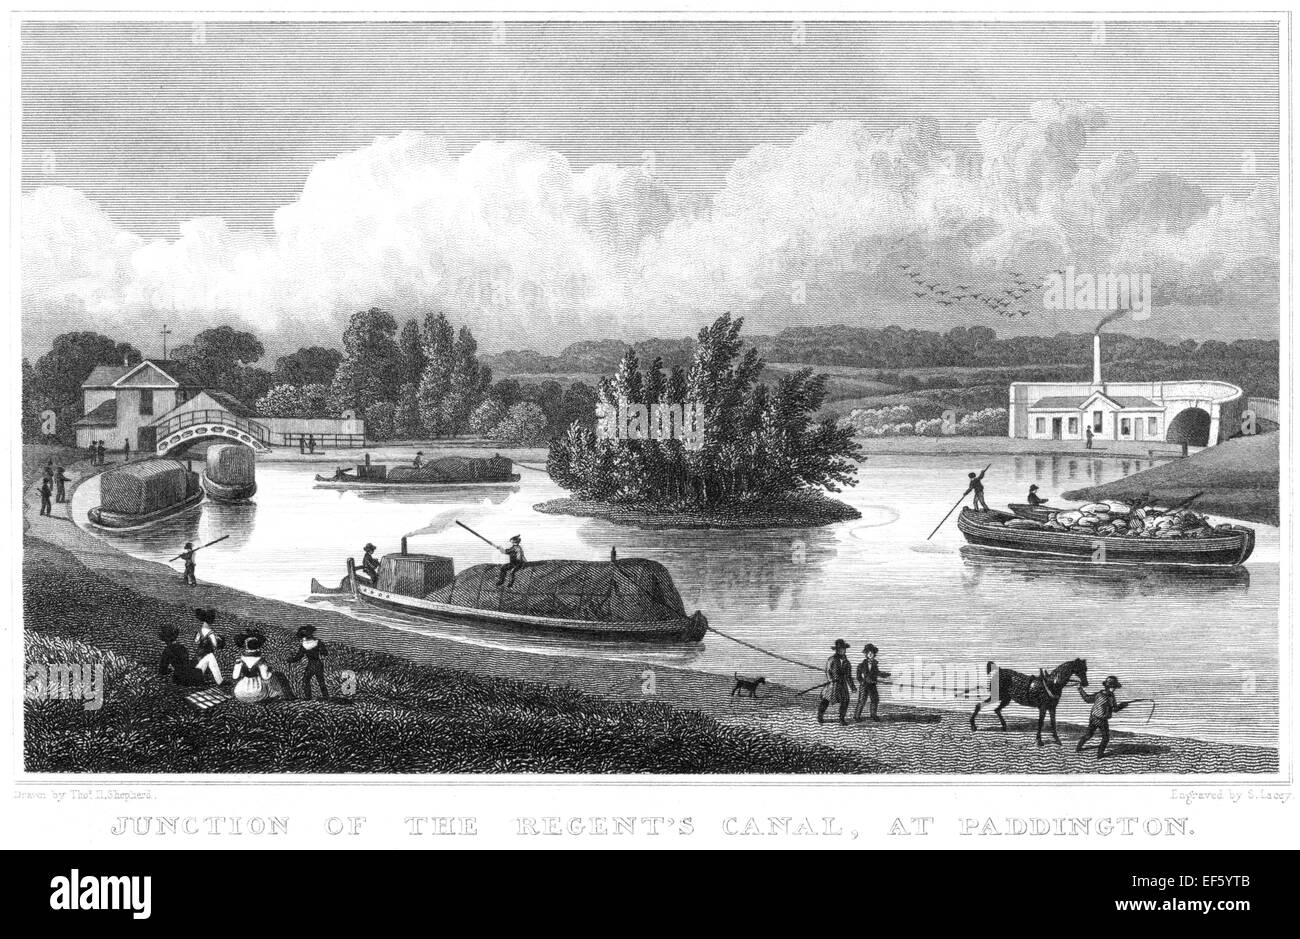 Gravure de la jonction du canal Regents, à Paddington, Londres, Royaume-Uni, numérisée à haute résolution à partir d'une publication imprimée en 1828. Banque D'Images